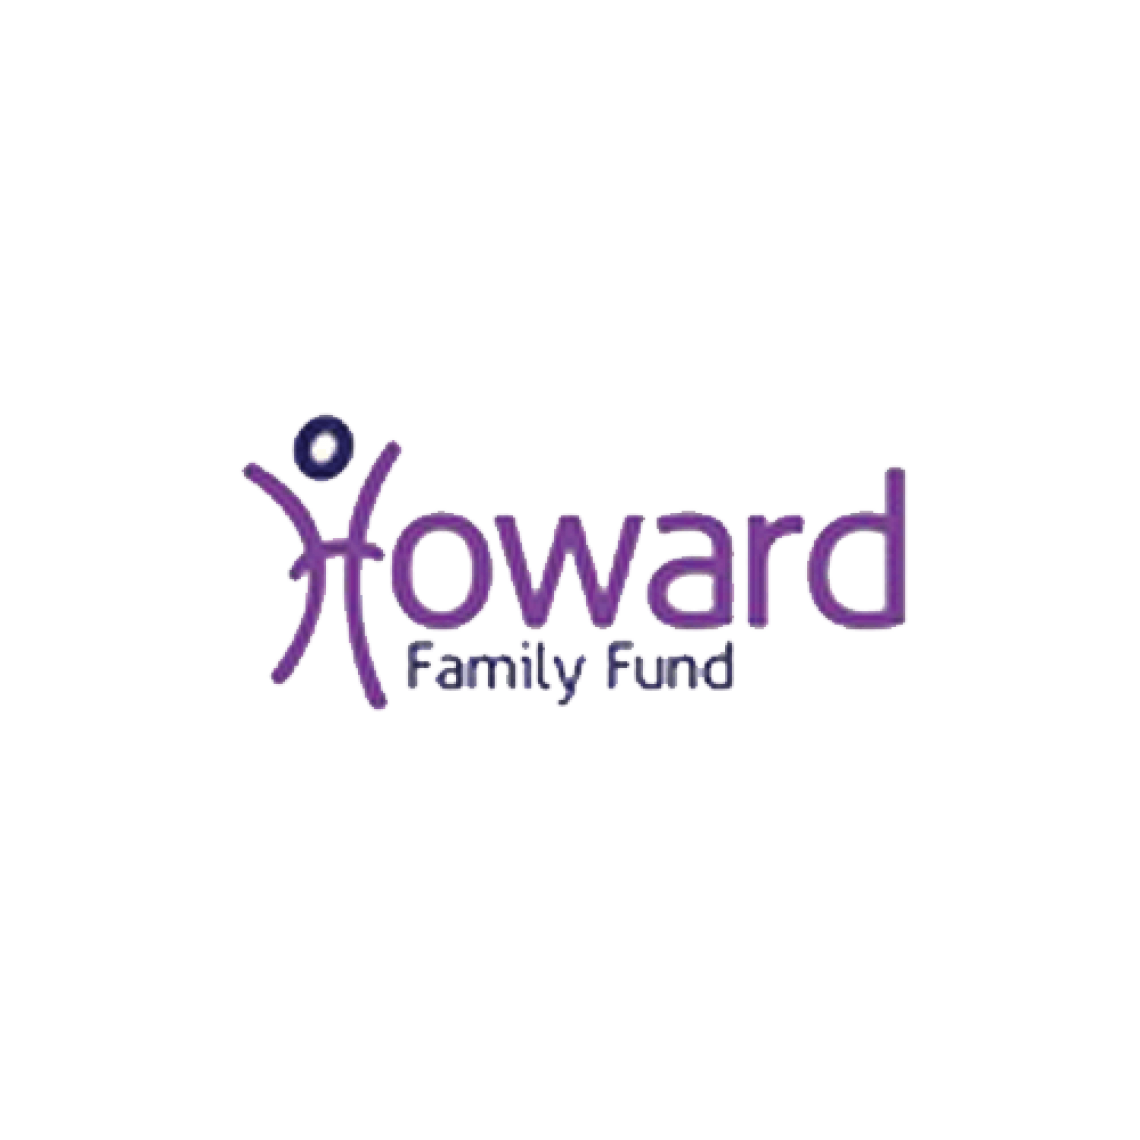 Howard \Family Fund logo